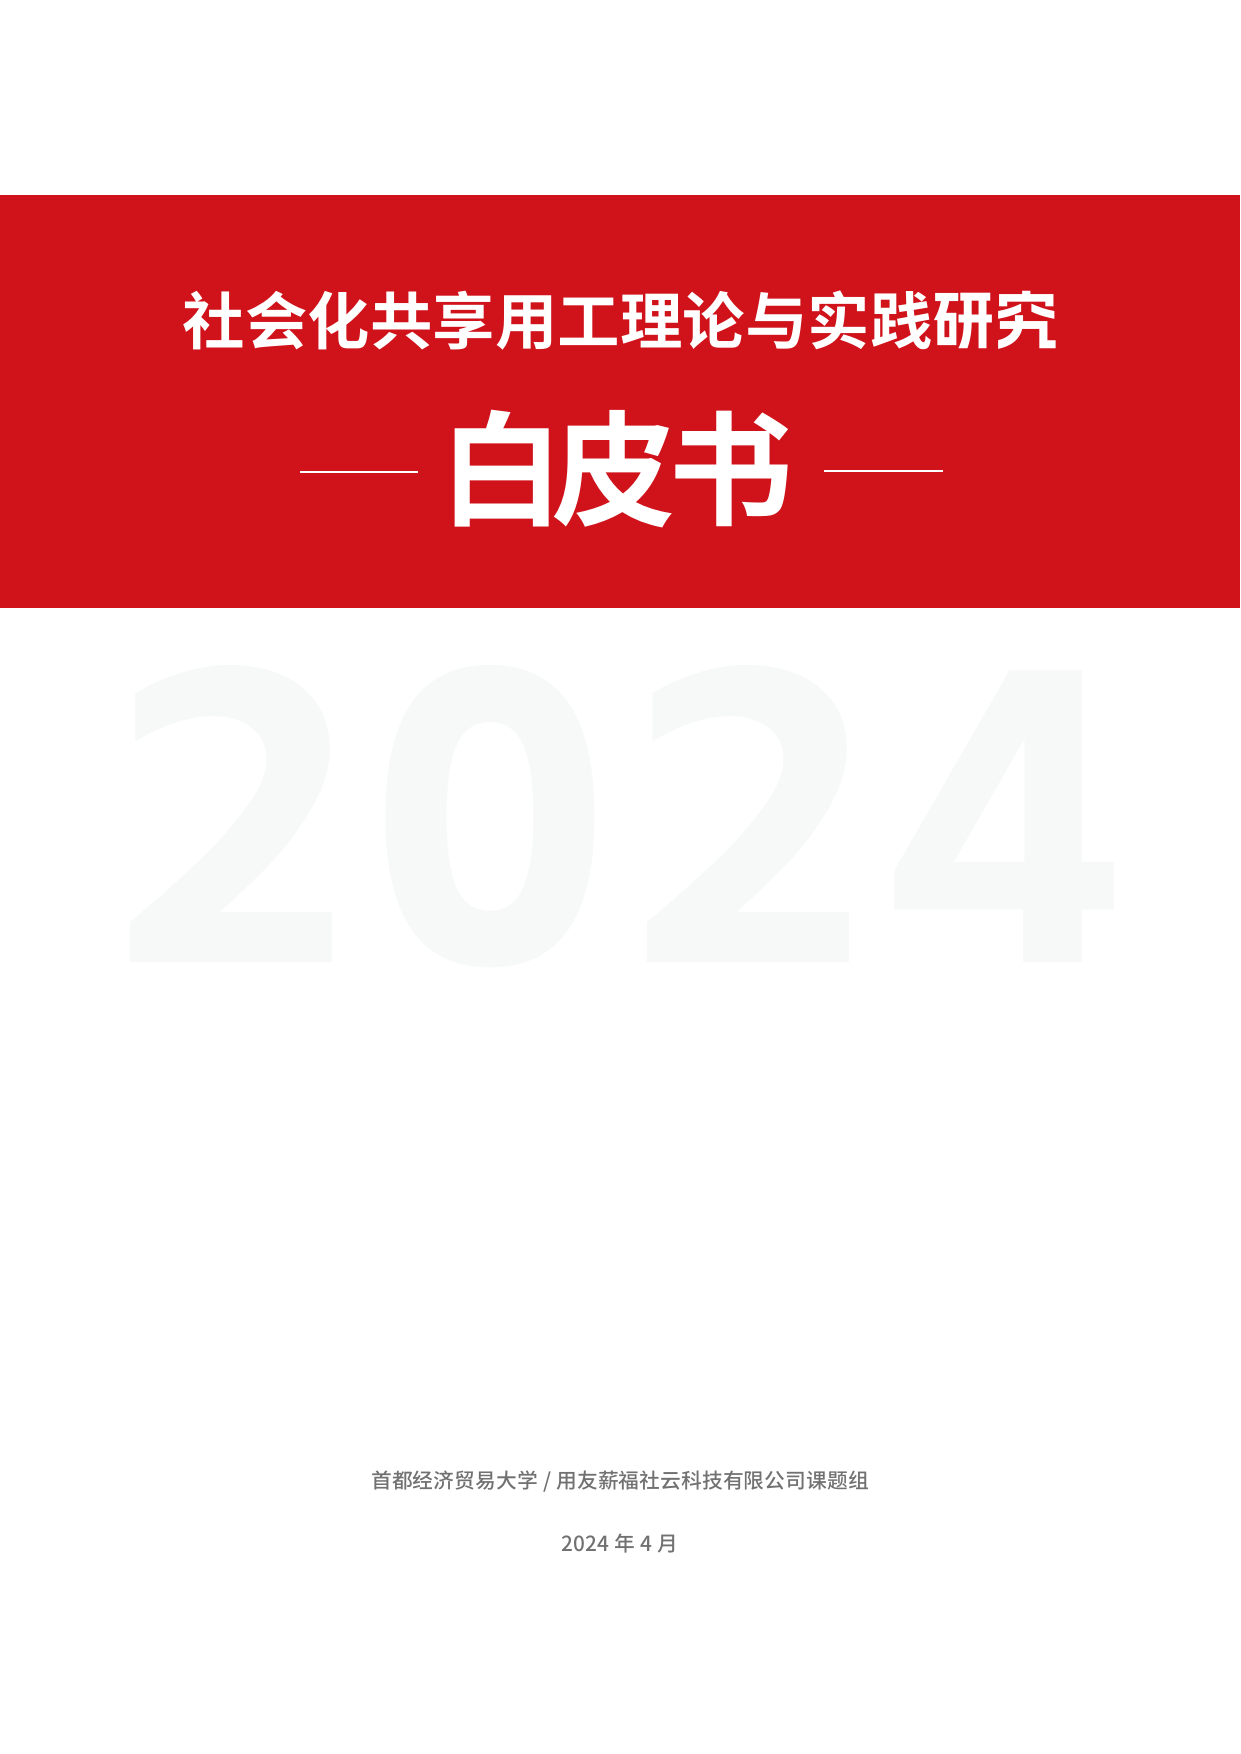 2024年社会化共享用工理论与实践研究白皮书.pdf